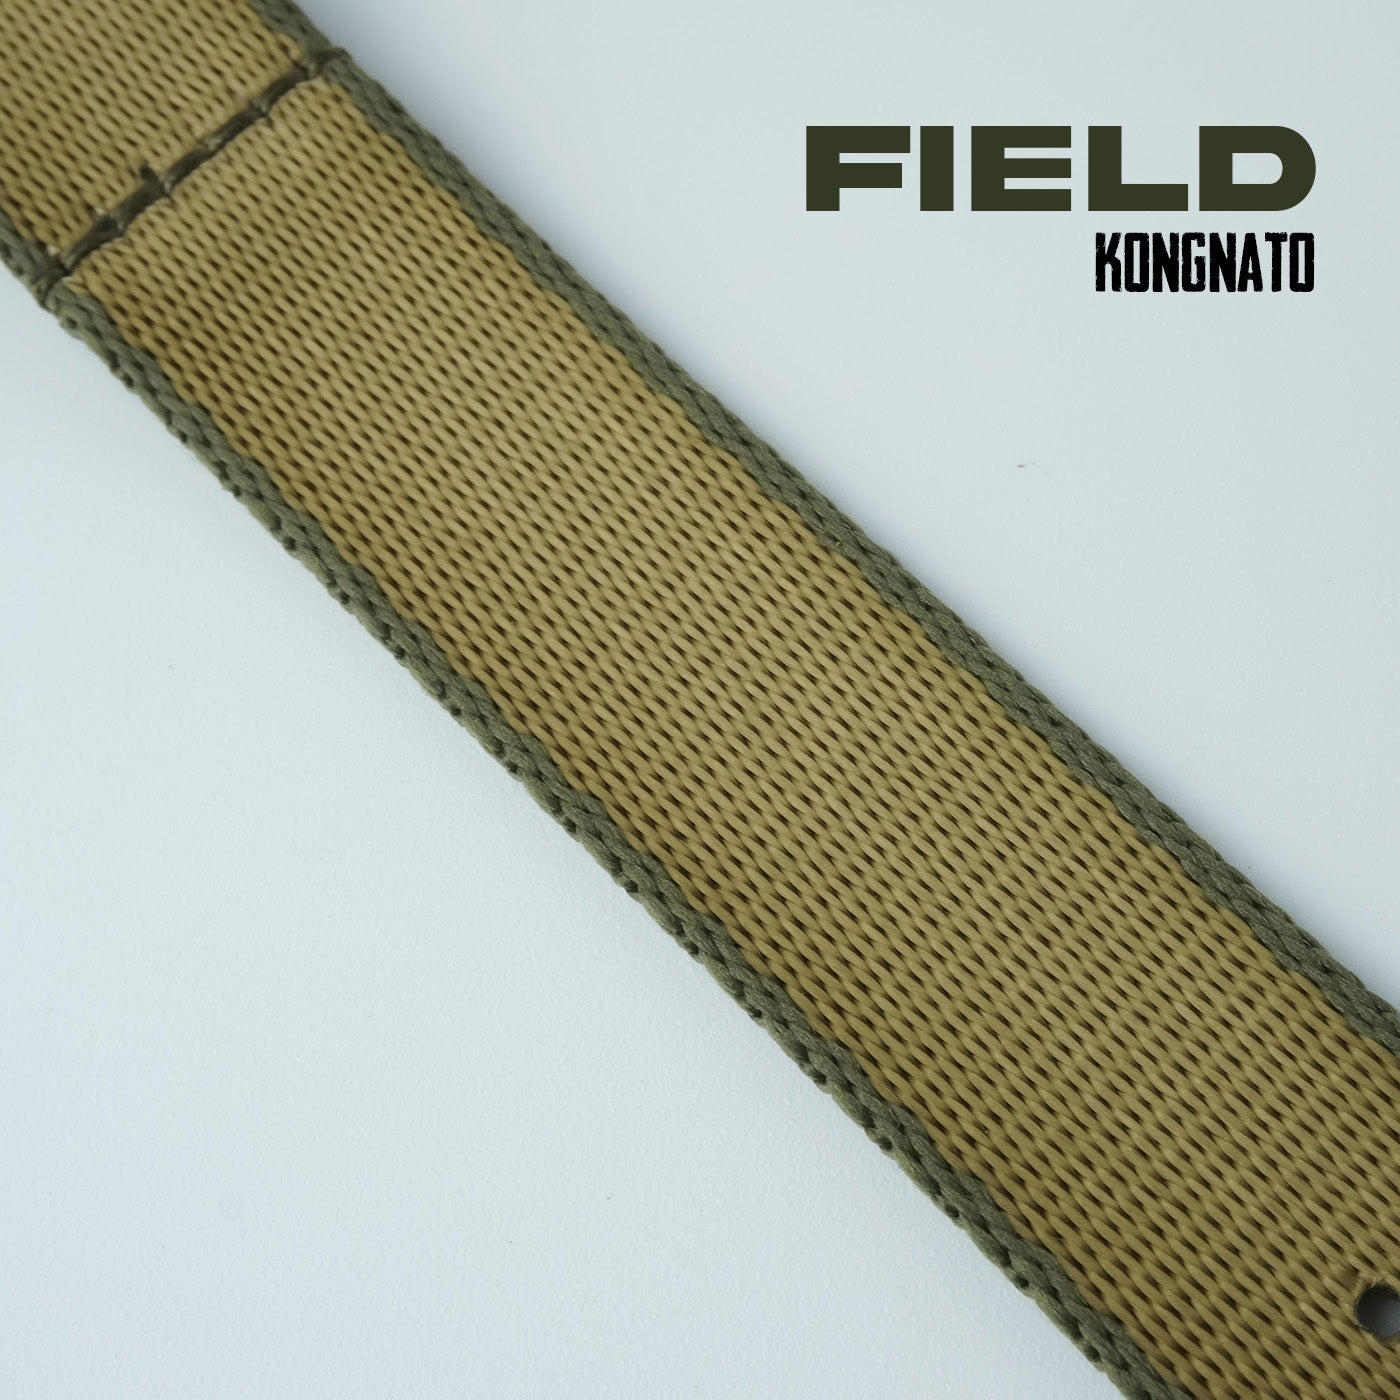 Field 20mm - KongNato (4319132287063)